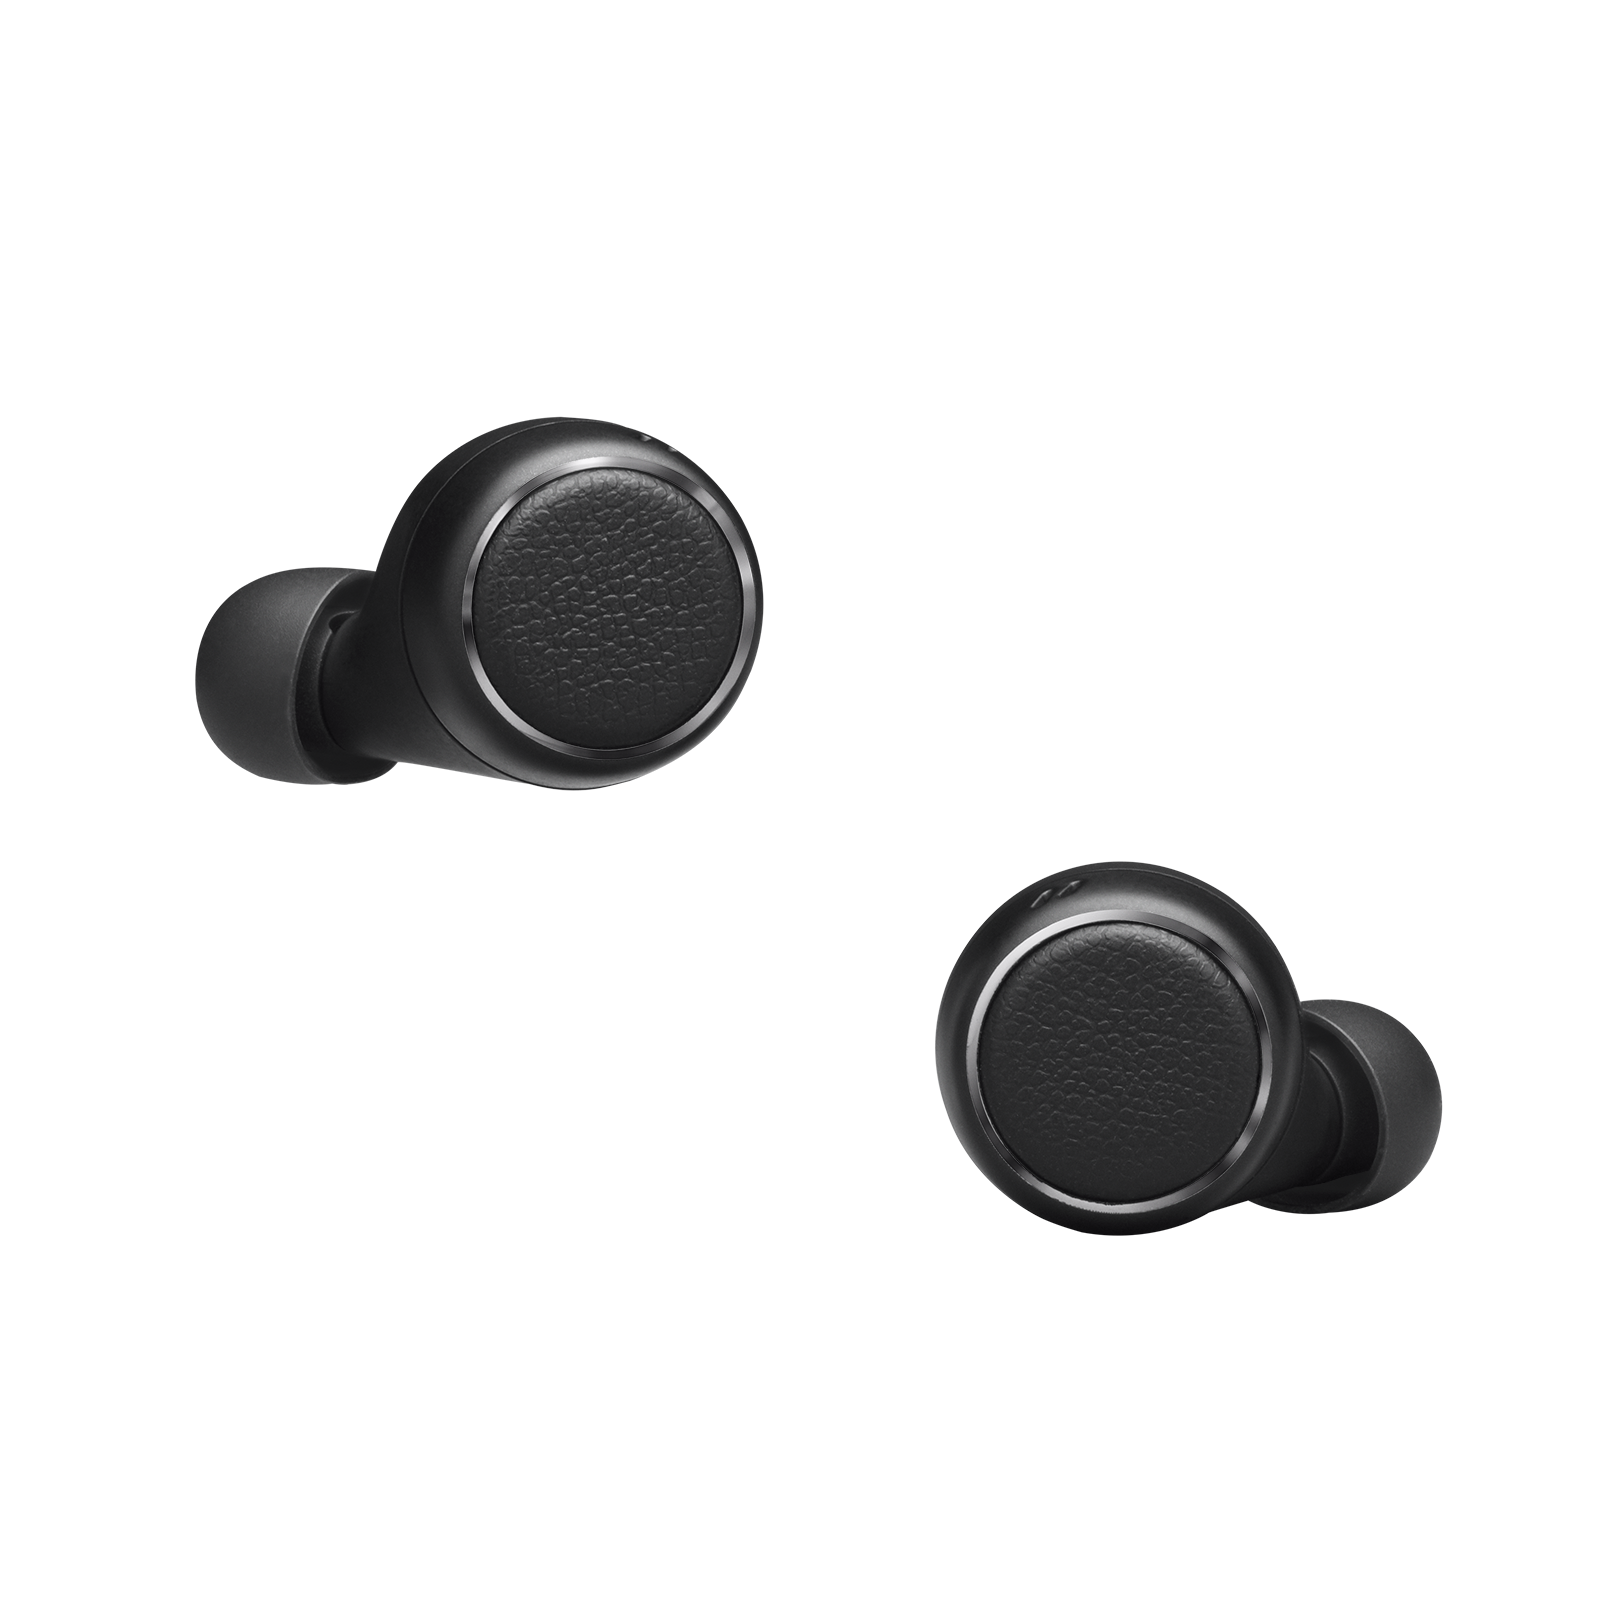 Harman Kardon FLY TWS - Black - True Wireless in-ear headphones - Front